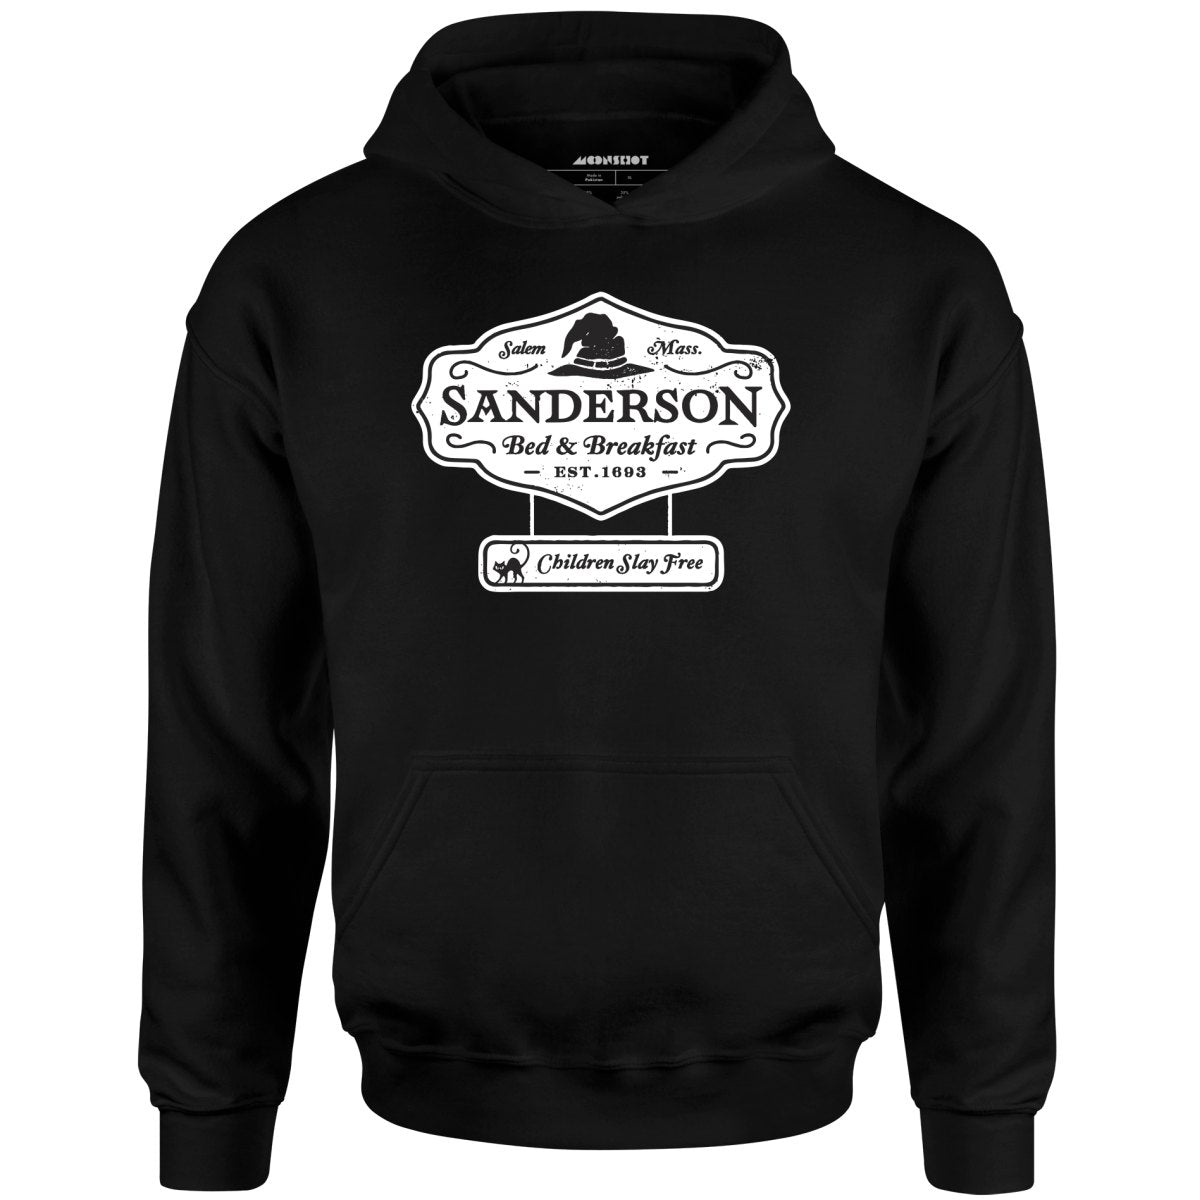 Sanderson Bed & Breakfast - Unisex Hoodie